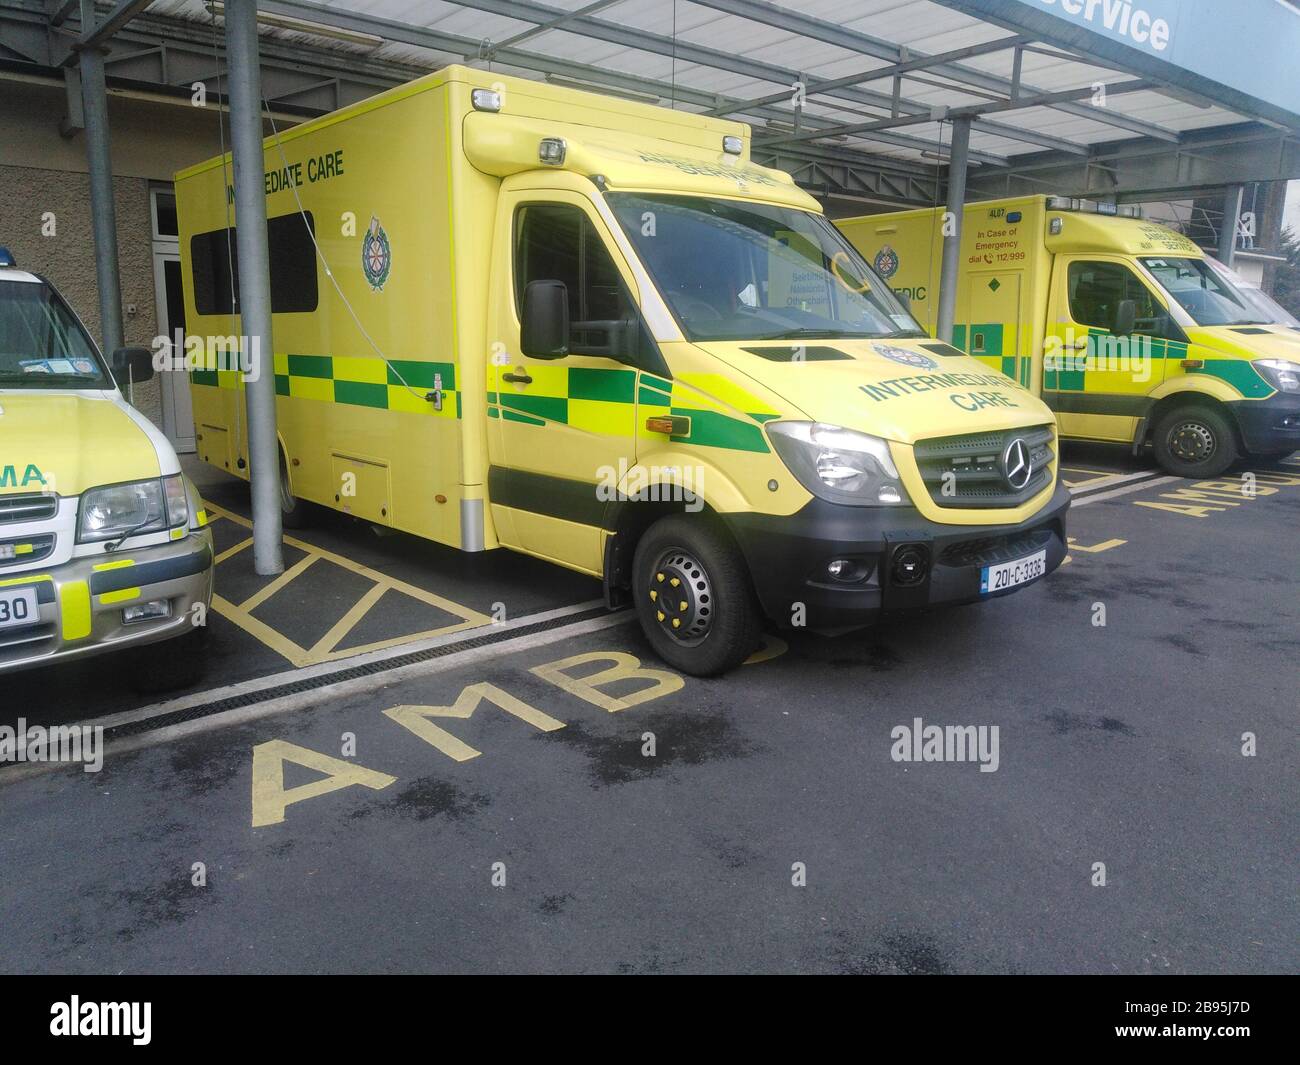 National Ambulance Service Intermediate Care Vehicle, Bantry Ambulance Base, Bantry, West Cork, Ireland Stock Photo